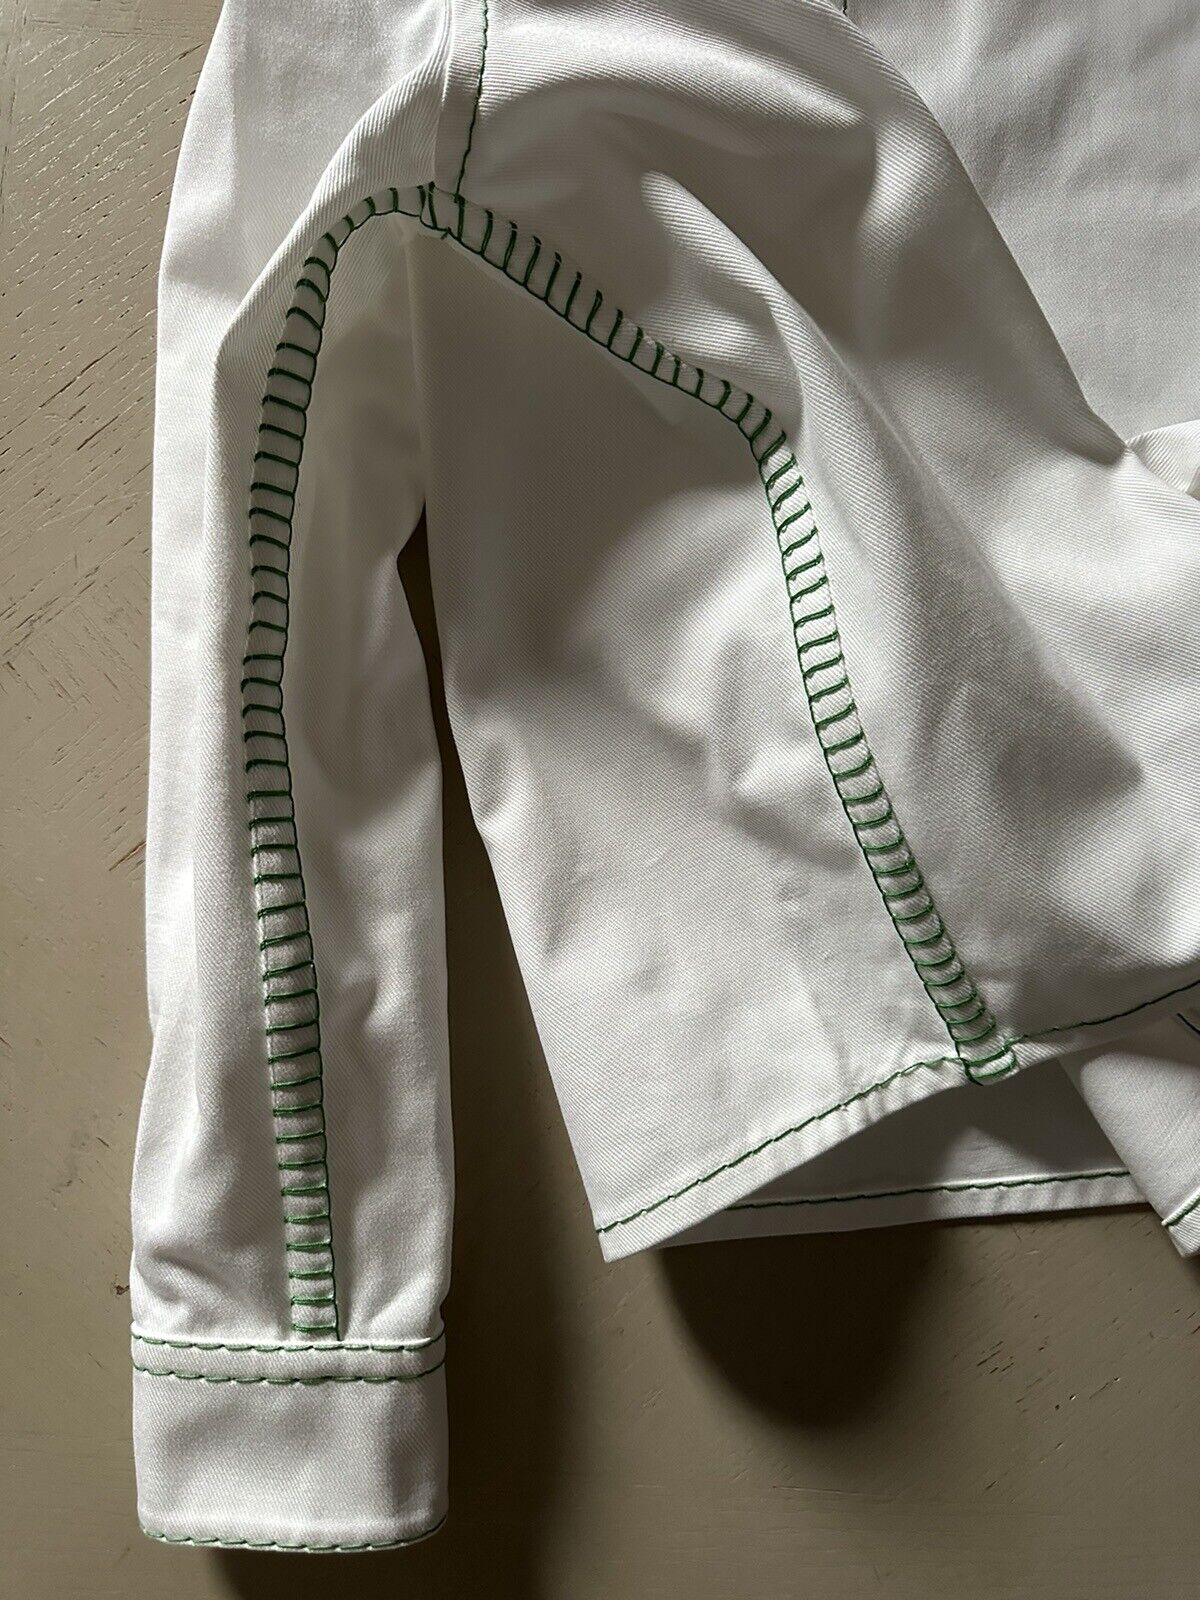 NWT $1200 Bottega Veneta Men Oversized Heavy Cotton Twill Shirt White 50 Eu/M